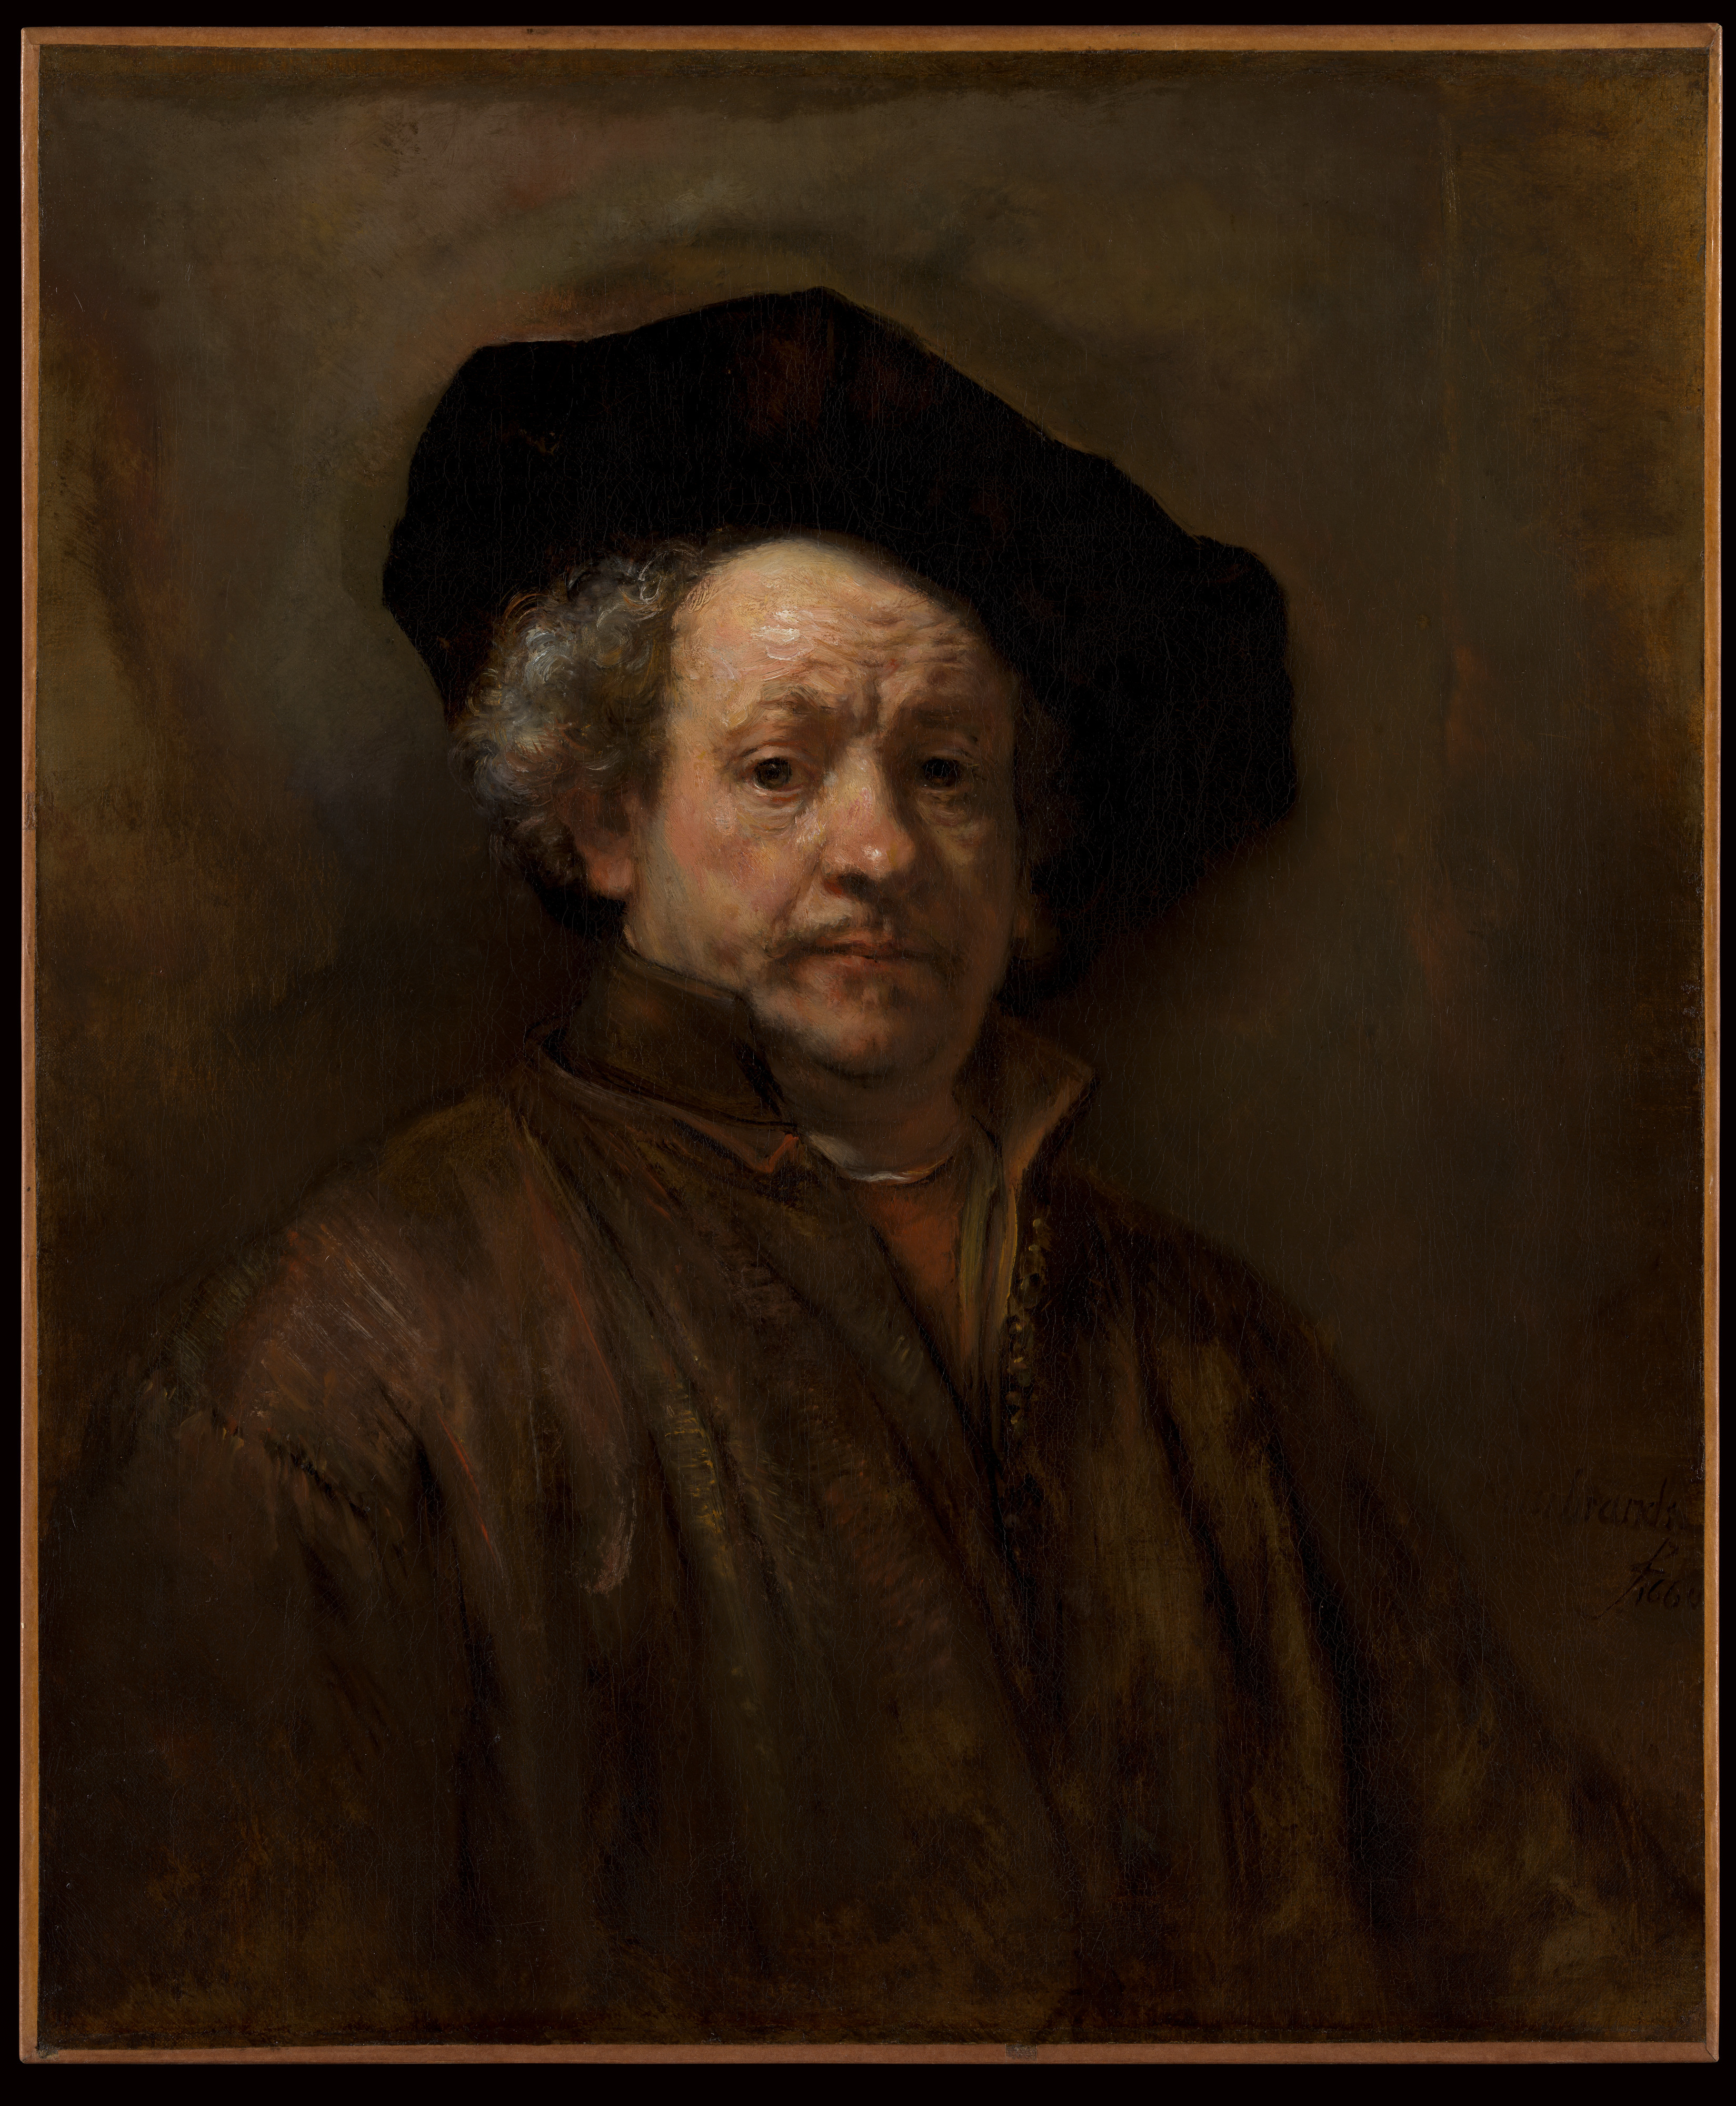 Self-Portrait by Rembrandt van Rijn - 1660 - 31 5/8 x 26 1/2 in Metropolitan Museum of Art